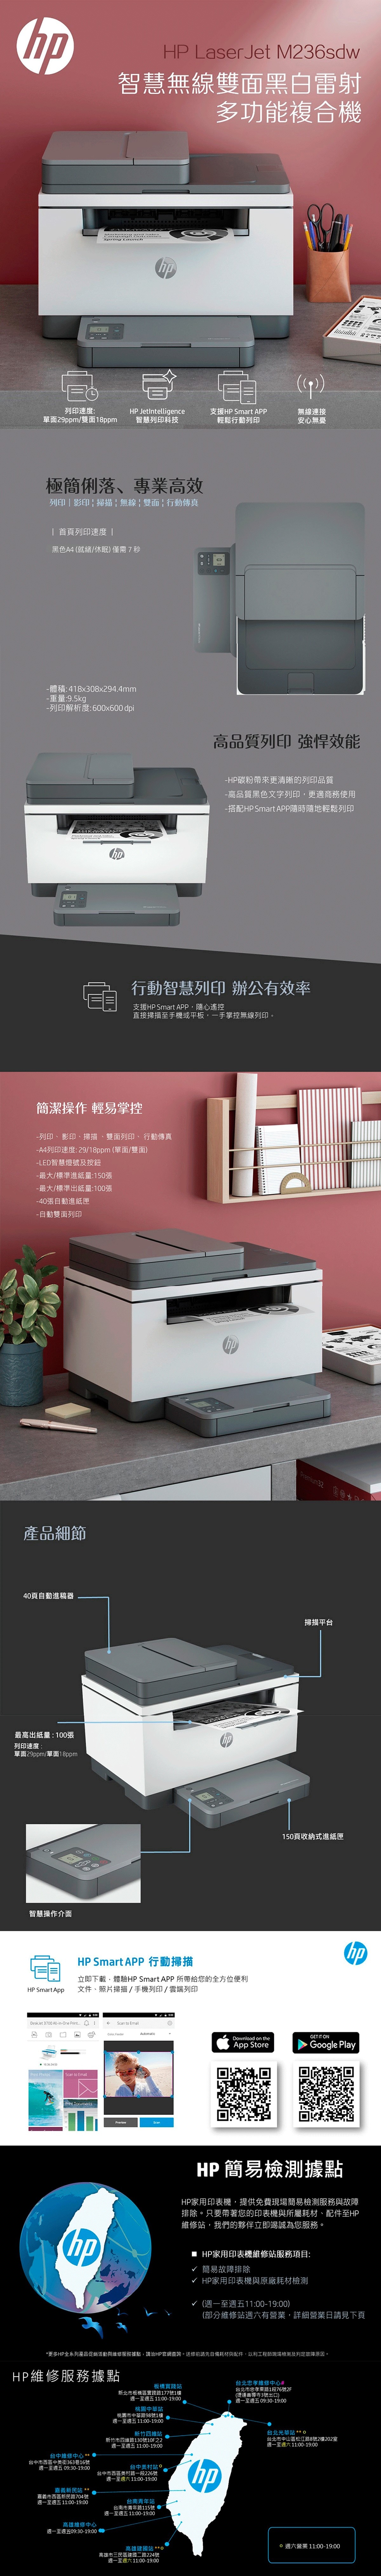 HP LaserJet 多功能事務機M236sdw 印表機，列印/影印/掃描/自動雙面列印/行動傳真等多功能，行動智慧列印支援SmartAPP，直接掃描至手機/平板。每分列印再推進，高速列印每分29頁直逼商用規格。全新外型設計，簡潔俐落，德國紅點設計獎。